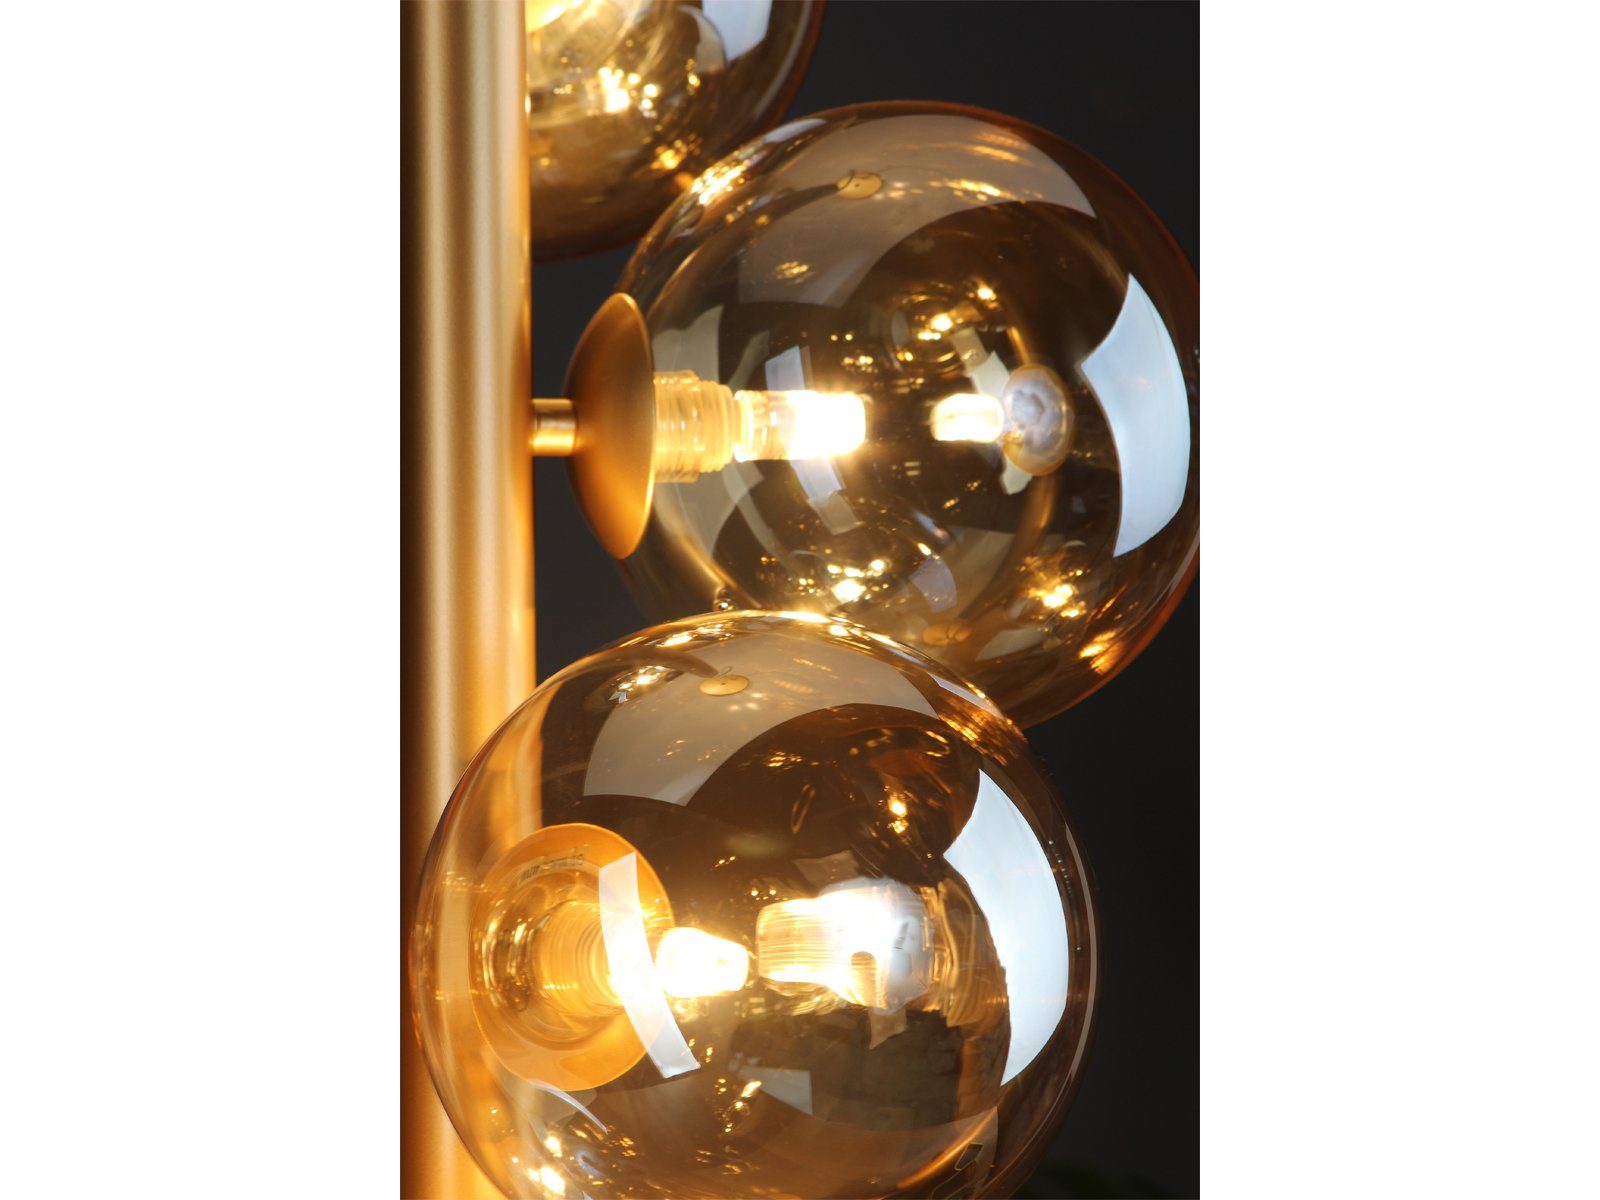 183cm Dimmfunktion, meineWunschleuchte LED Bauhaus für ausgefallene Messing-Amber Glas-kugel Lampe 5x Gold, Esstisch über wechselbar, Pendelleuchte, Warmweiß, LED